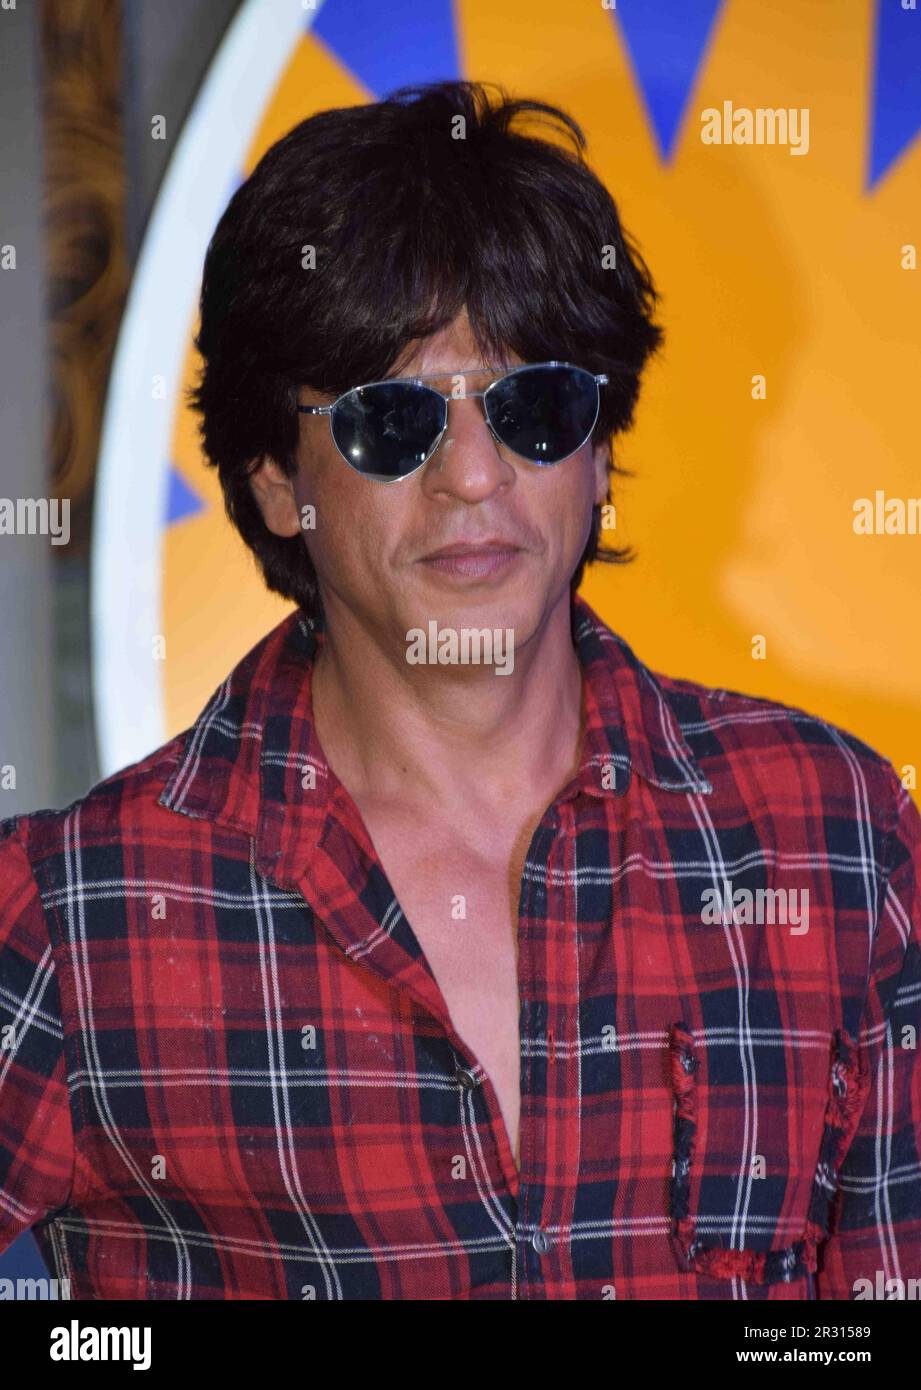 Shah Rukh Khan, SRK, attore indiano, inaugurazione INOX, Mumbai, India, 11 maggio 2017 Foto Stock